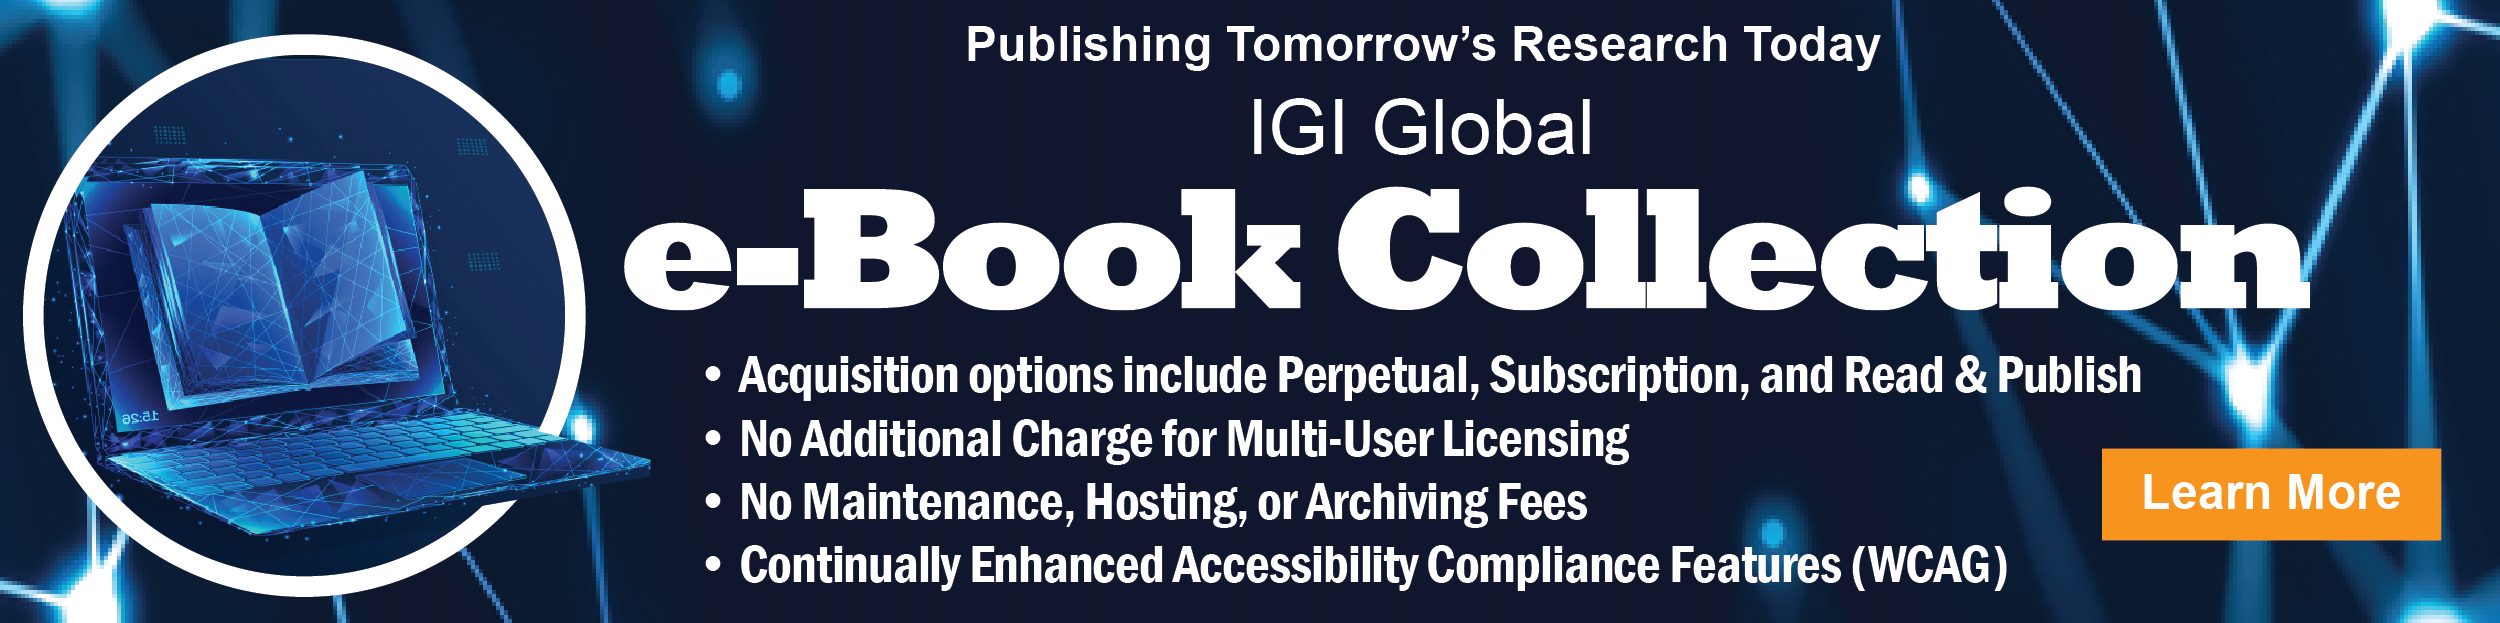 IGI Global e-Book Collection